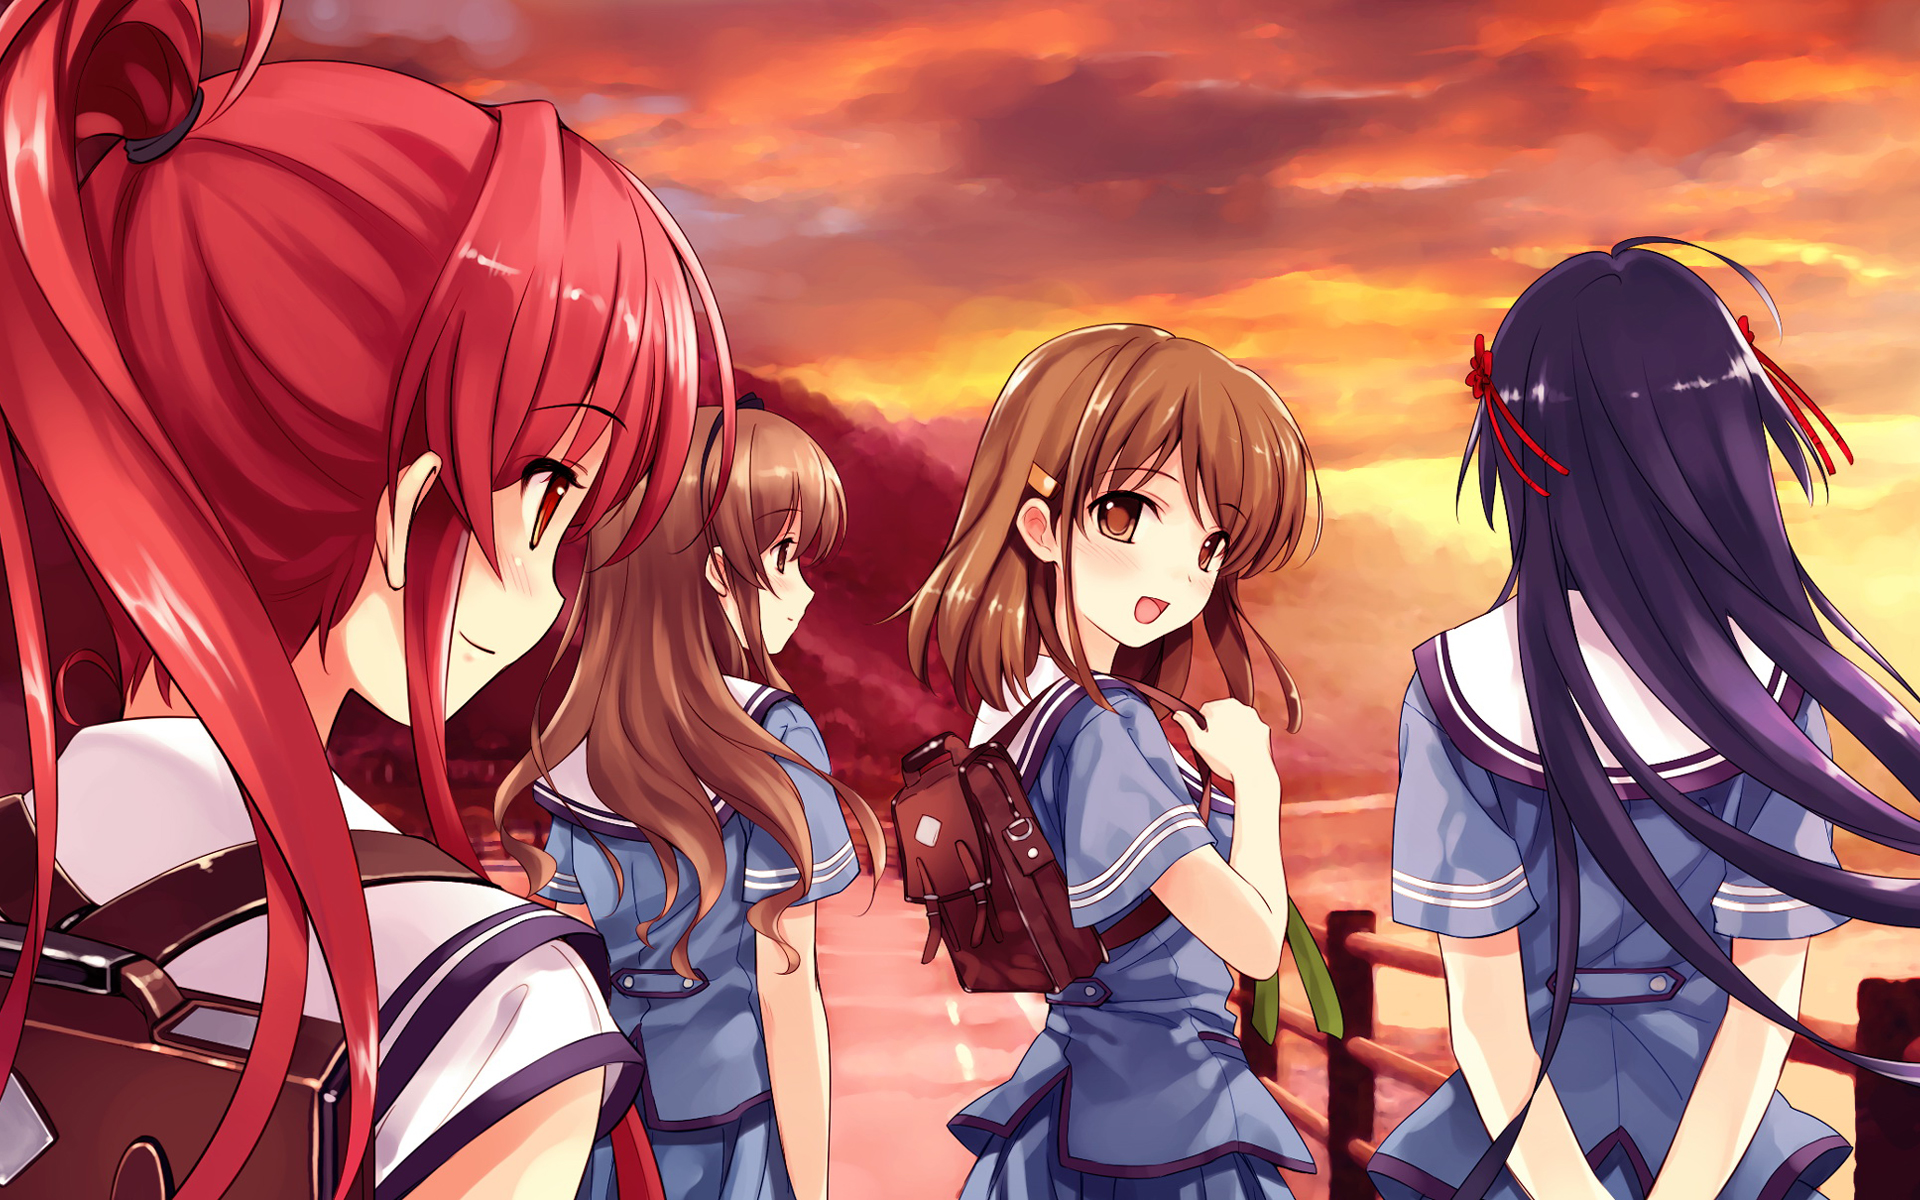 school uniforms, Misaki Kurehito, anime girls, Suiheisen made Nan Mile?, games, Miyamae Tomoka, Koga Sayoko, Nakano Hinata, Tsuyazaki Kokage - desktop wallpaper